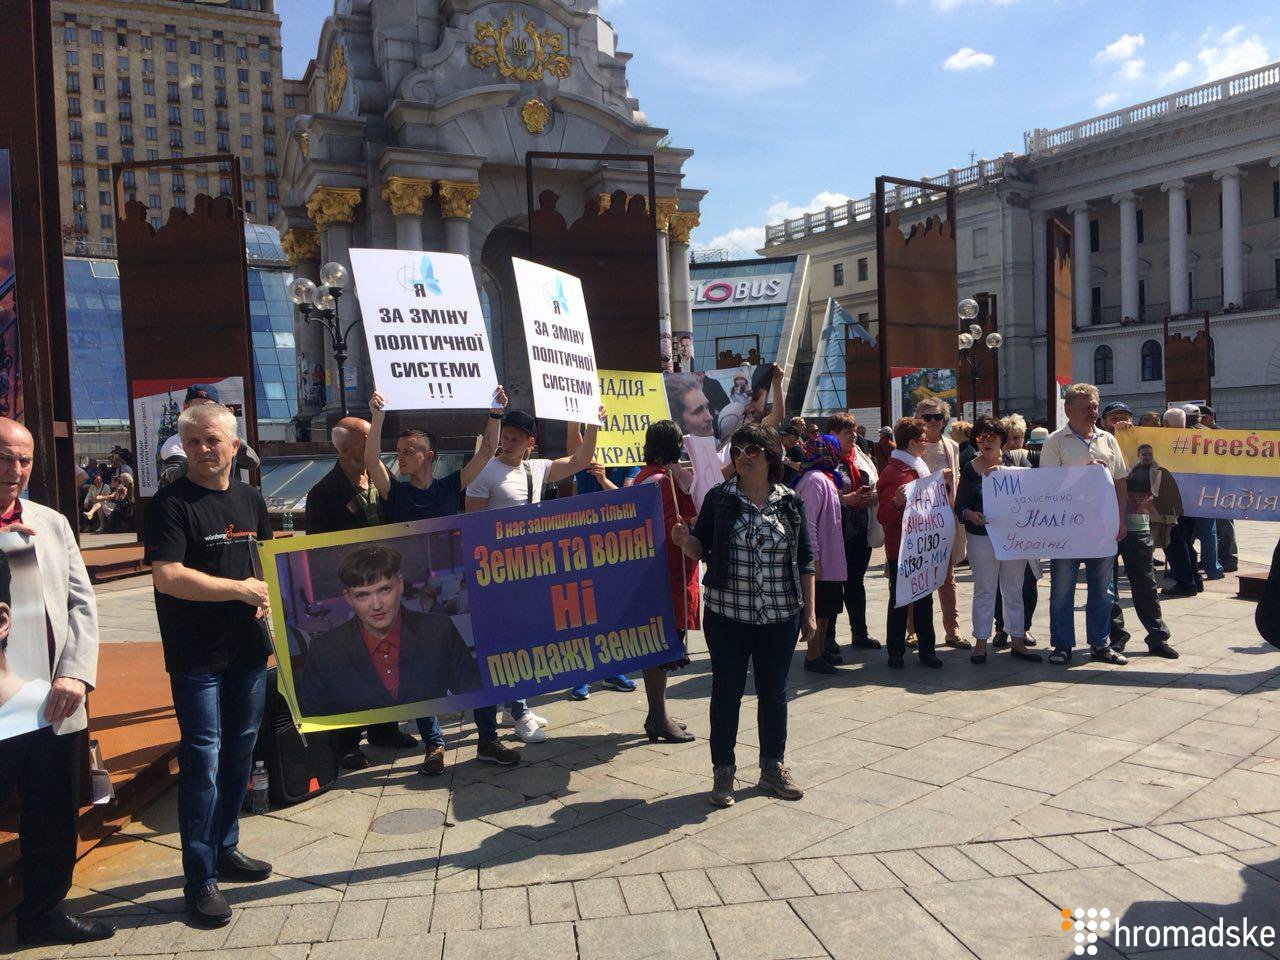 "Надя в плохом состоянии": сестра Савченко пыталась собрать  митинг на Майдане в поддержку арестованного нардепа, но пришли 20 человек - кадры